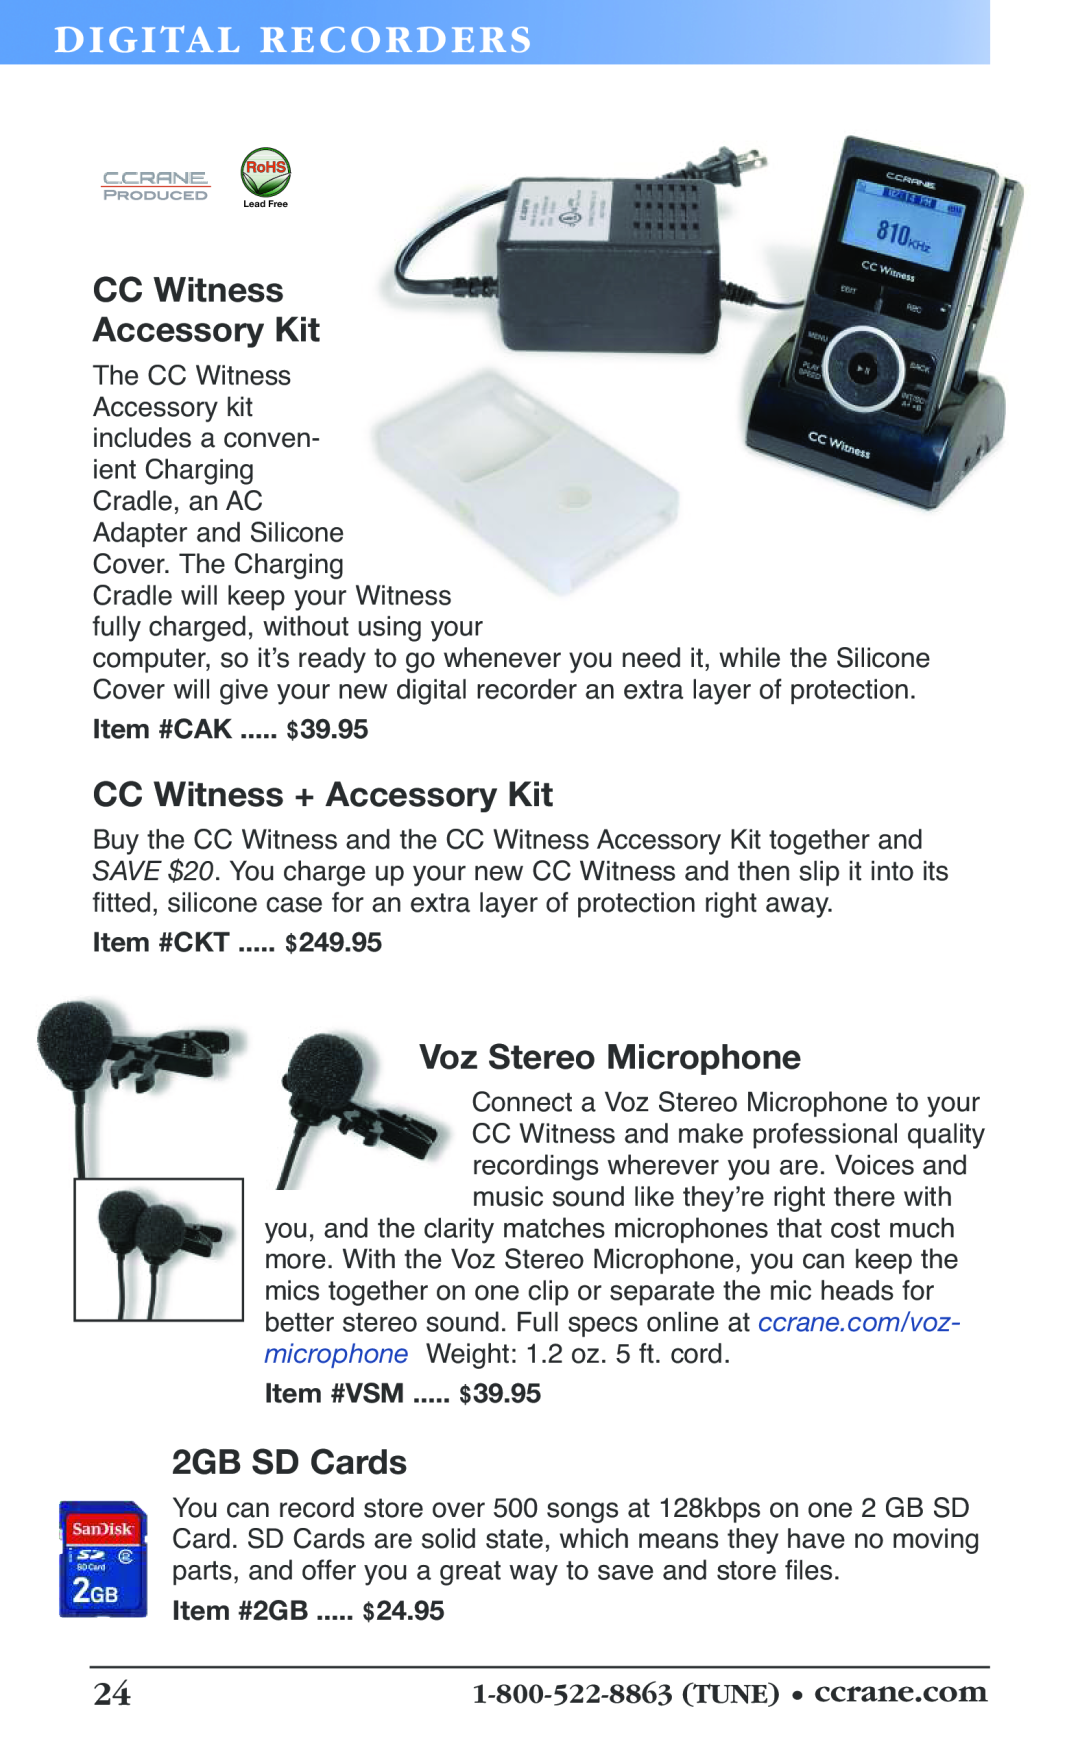 C. Crane 19f manual Di Git Al Rec Or De Rs, CC Witness Accessory Kit, CC Witness + Accessory Kit, Voz Stereo Microphone 